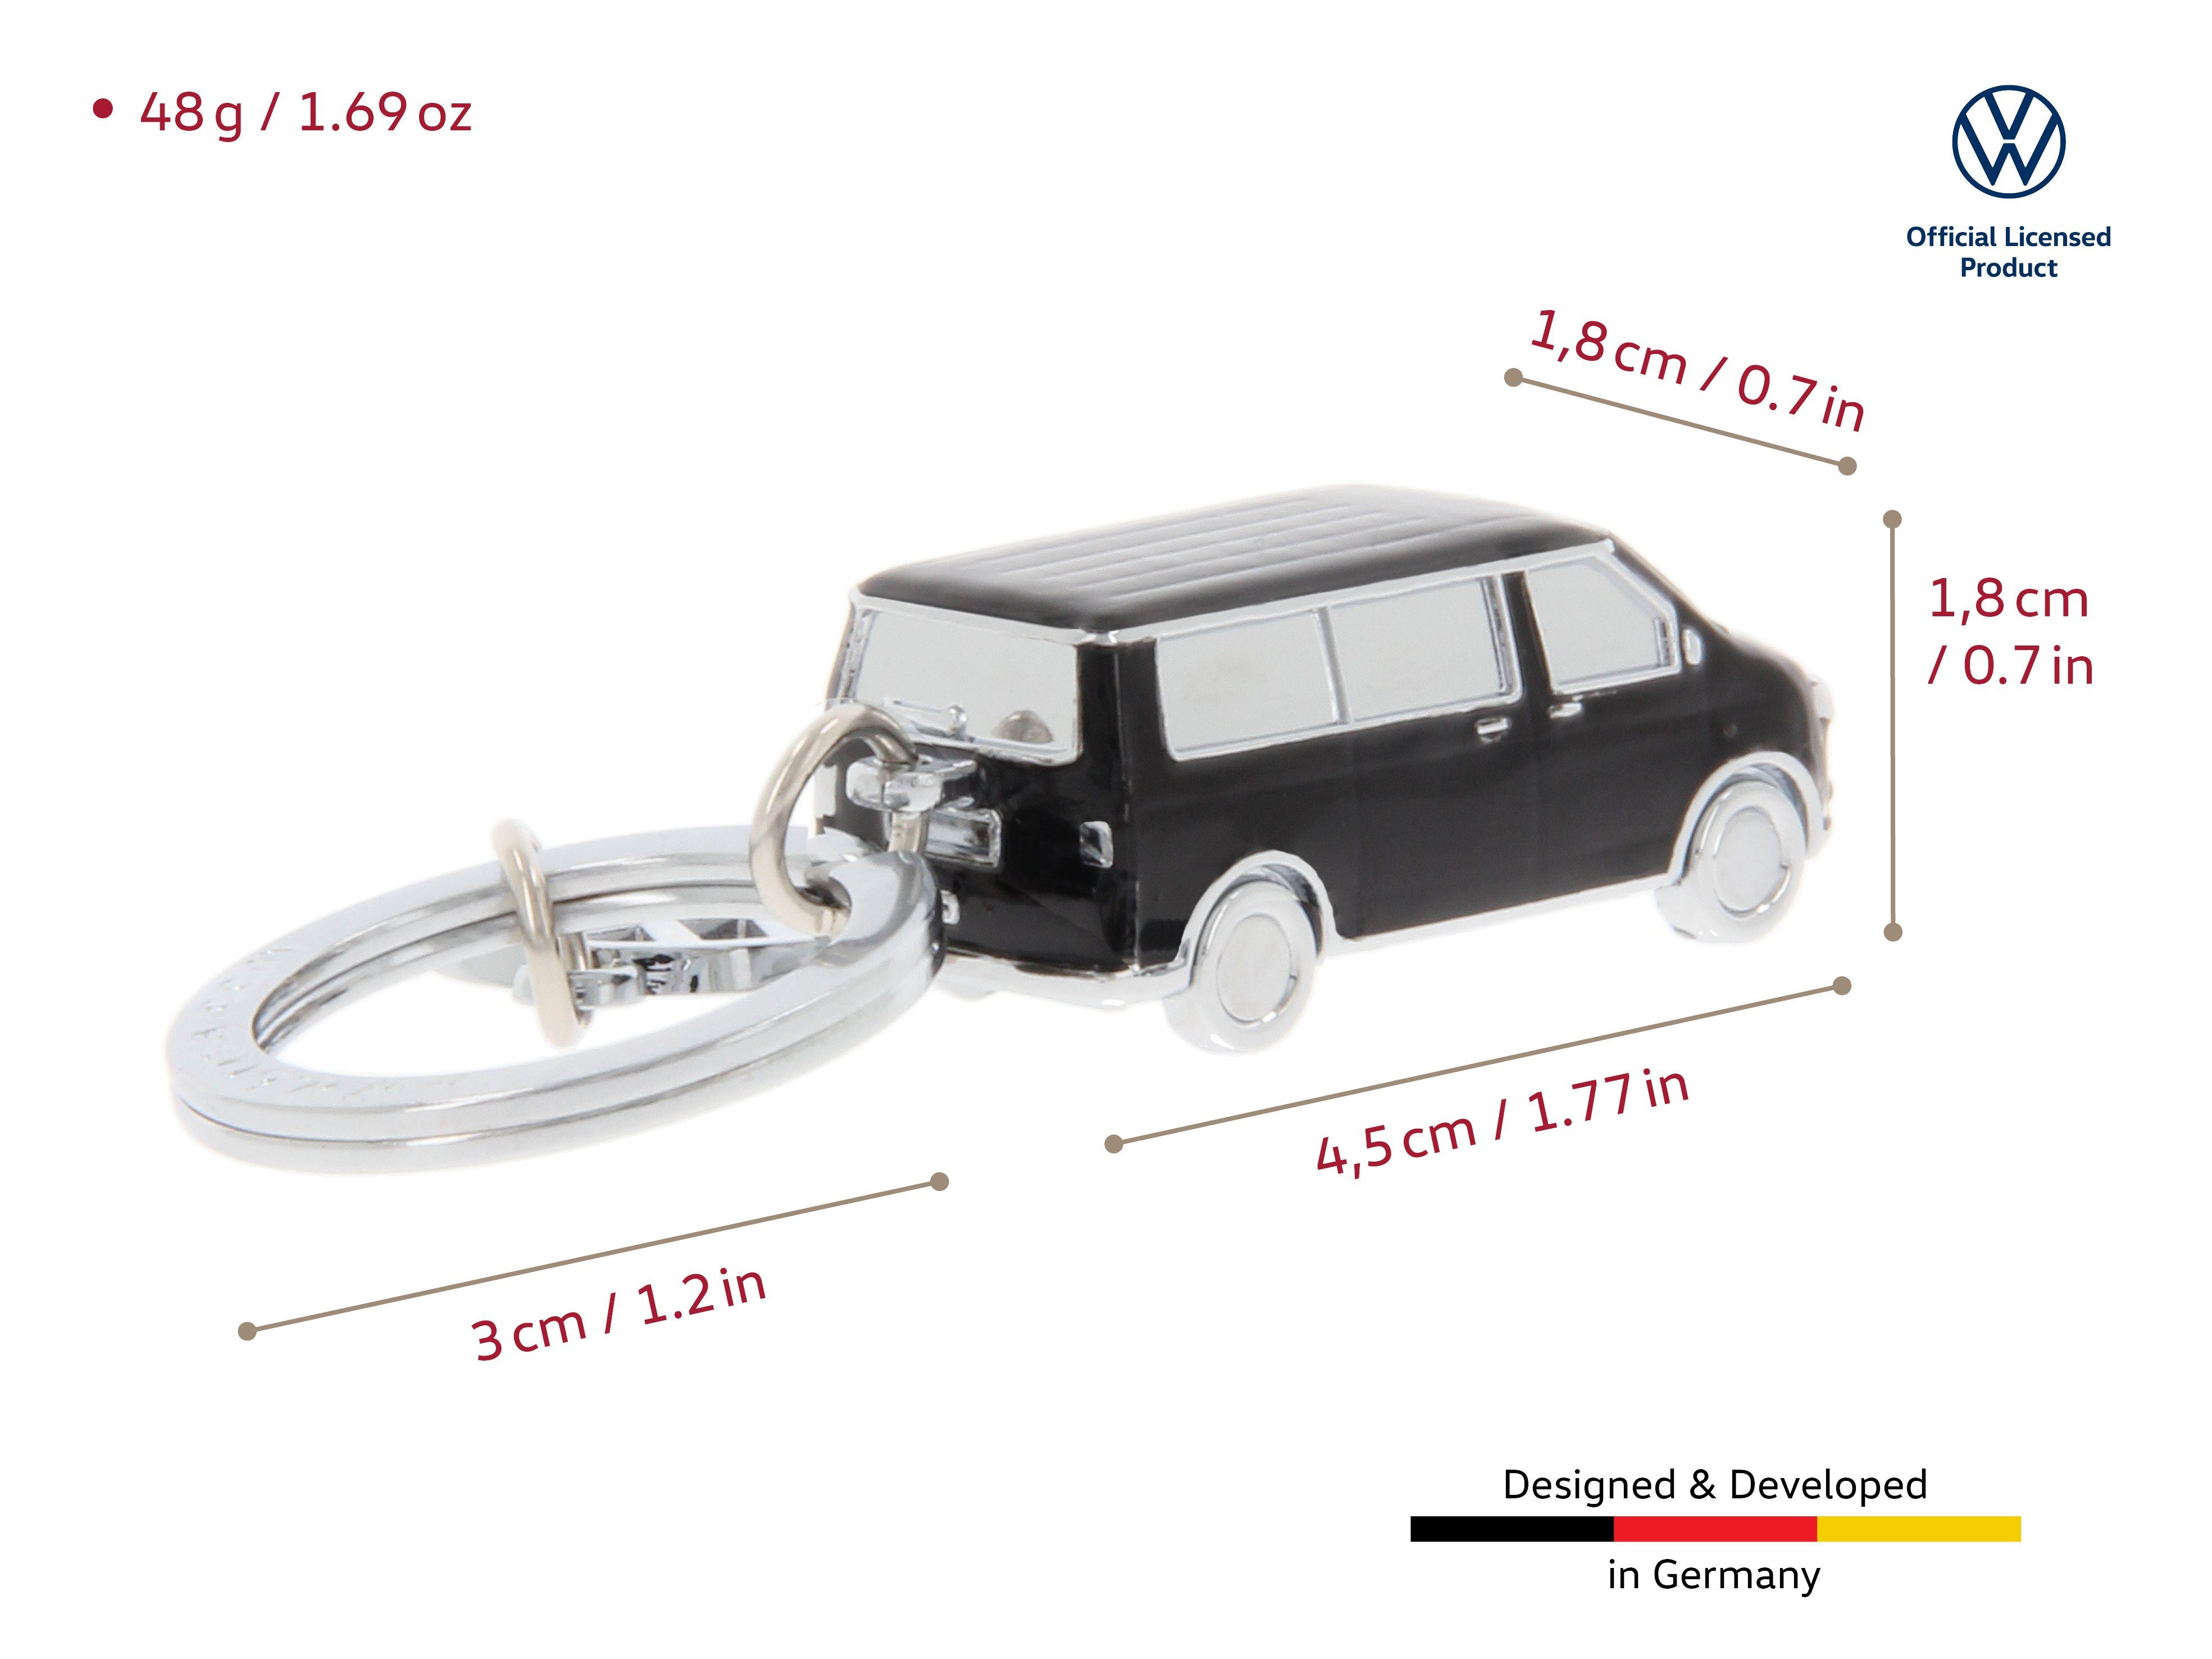 BRISA im Design Volkswagen Bulli Schlüsselbund, by schwarzen Schlüsselring, Schlüsselanhänger Bus T5 Collection VW Accessoire